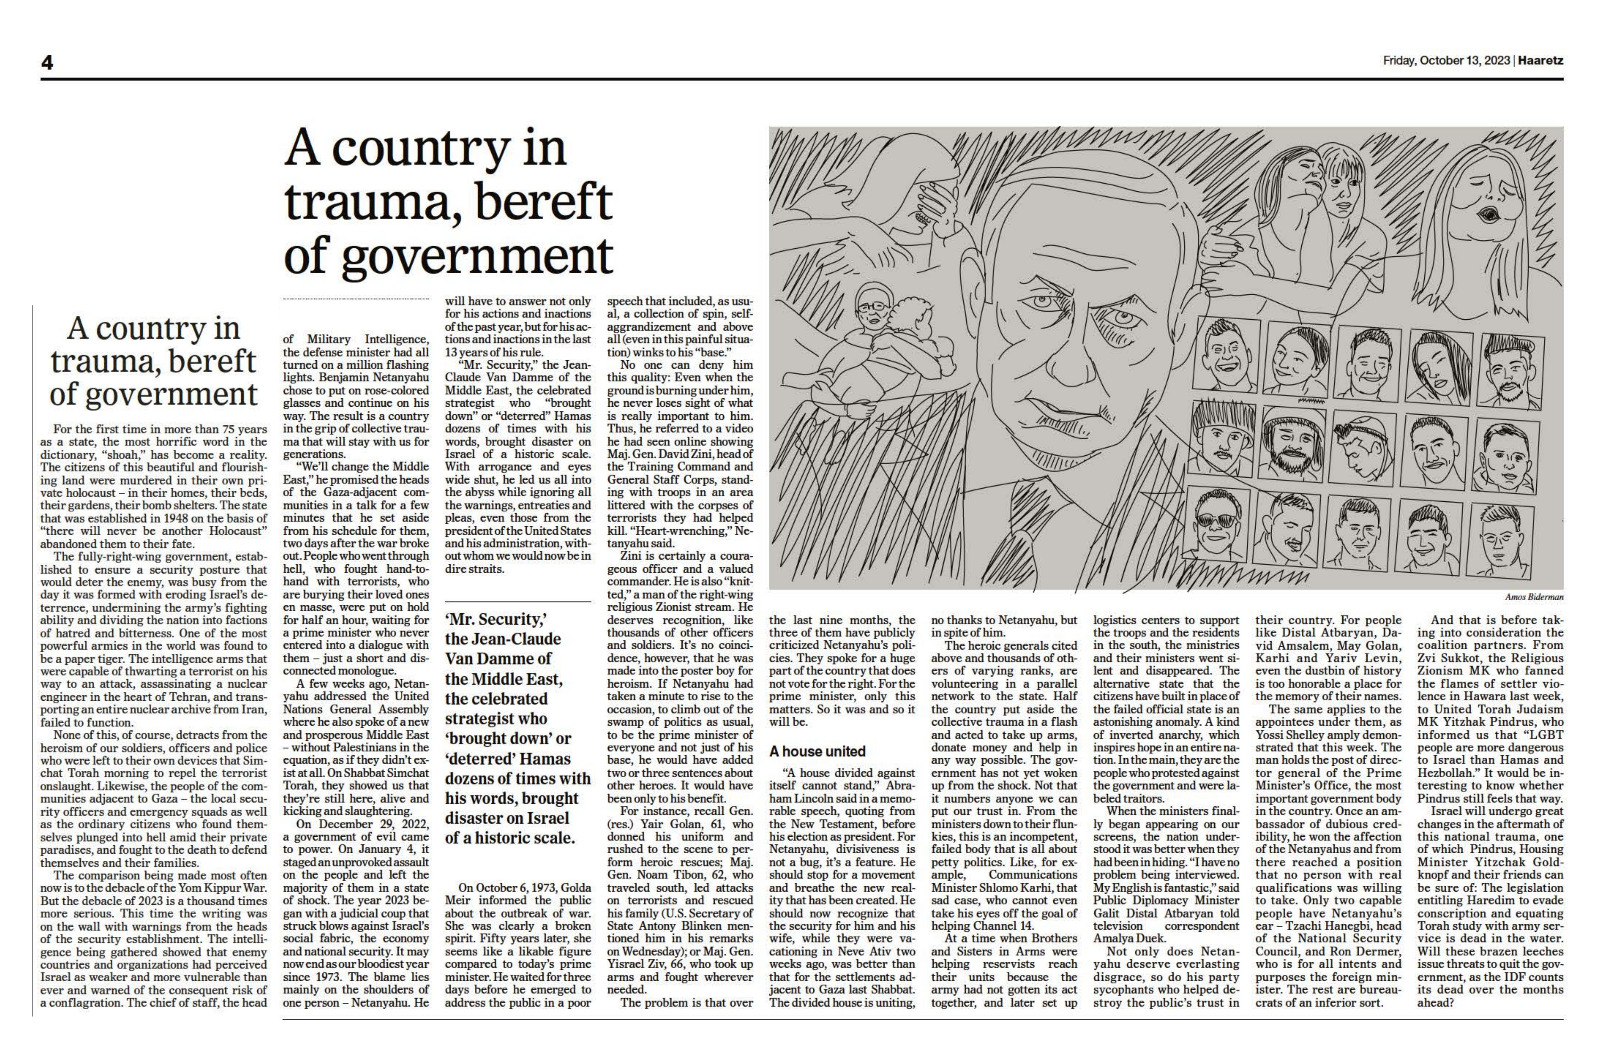 Il quotidiano israeliano Haaretz: siamo un Paese traumatizzato e privo di un governo